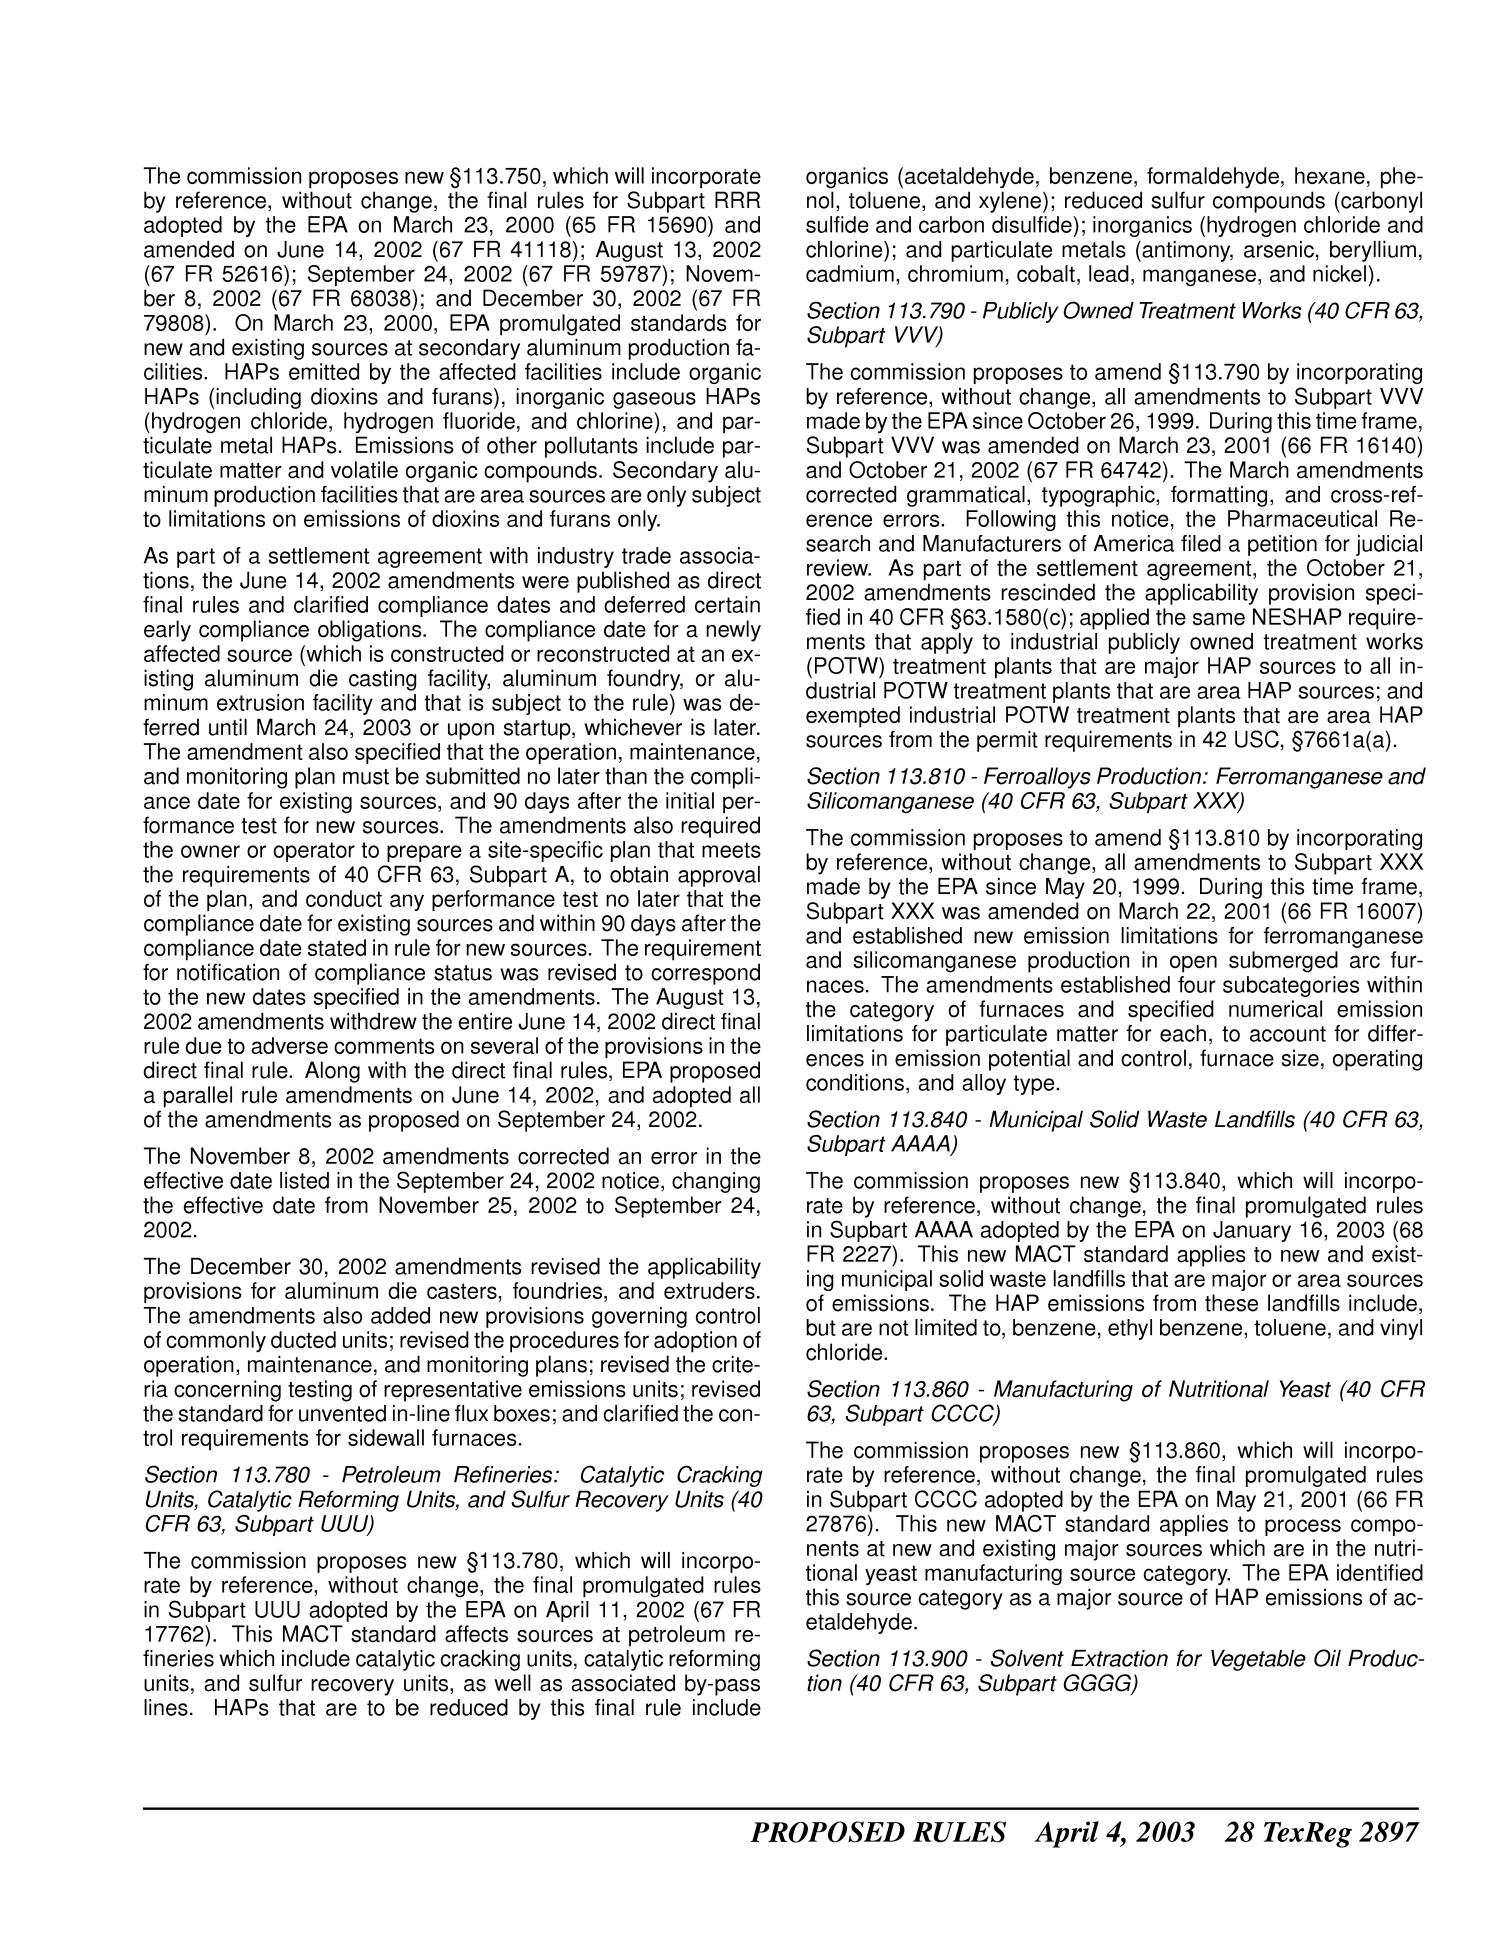 Texas Register, Volume 28, Number 14, Pages 2821-2988, April 4, 2003
                                                
                                                    2897
                                                